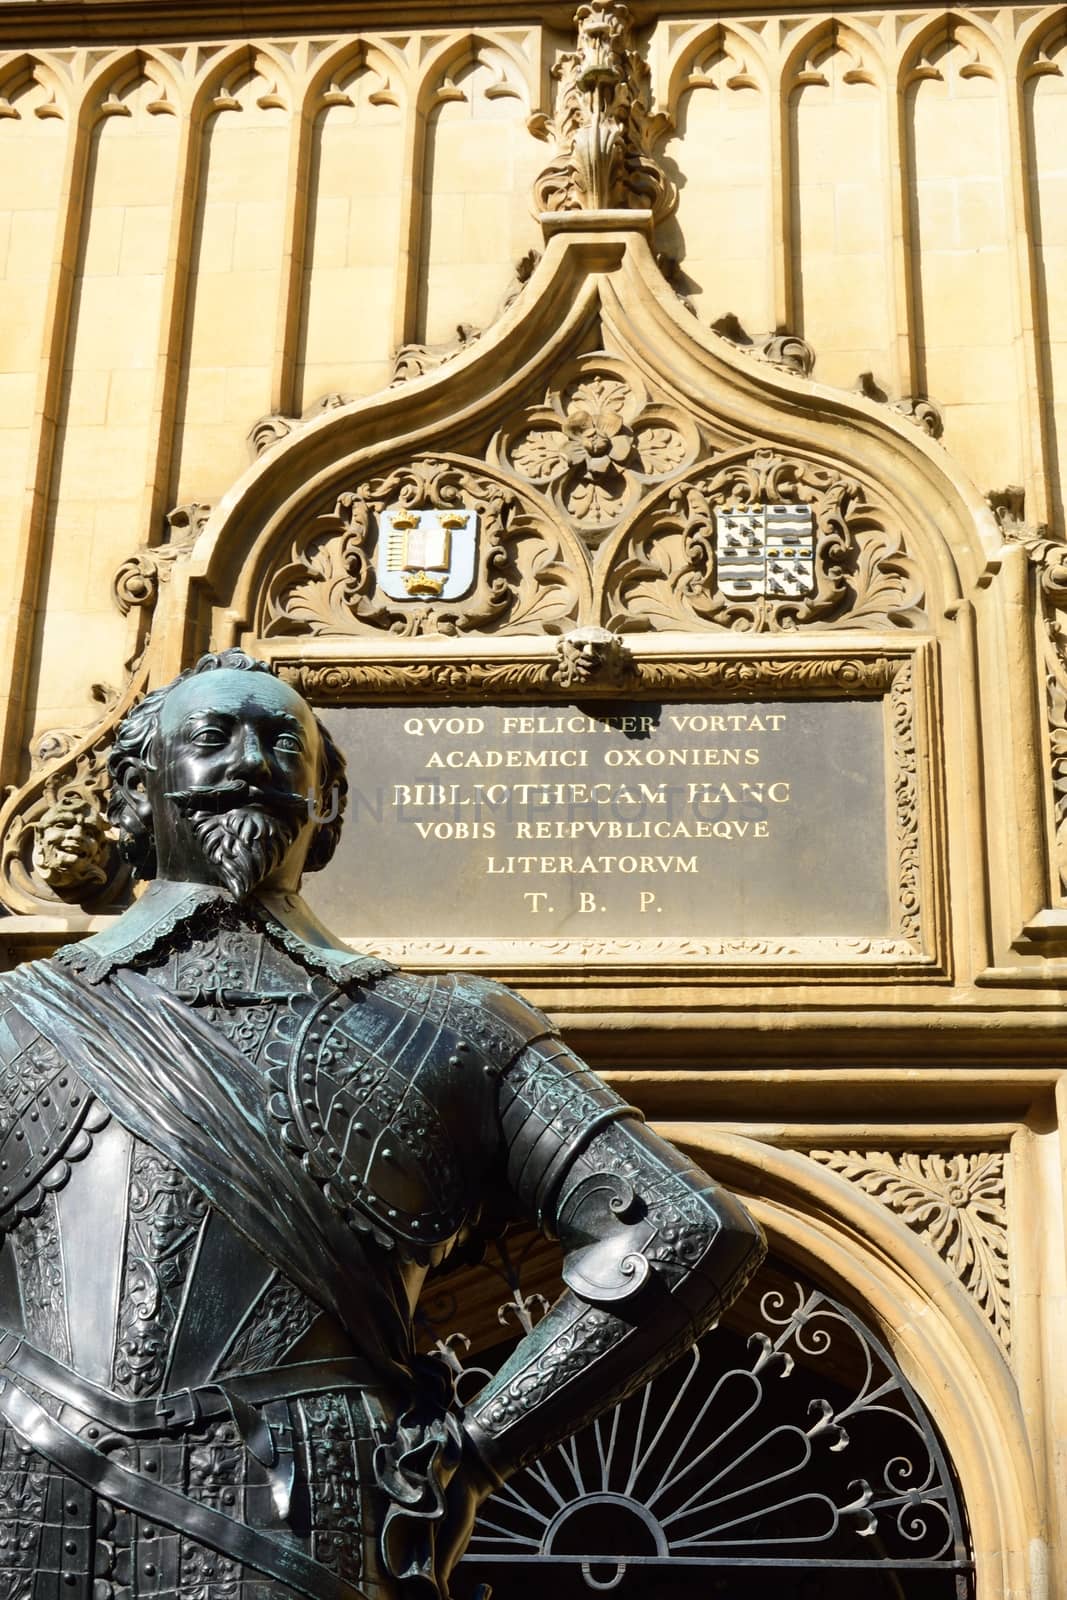 Earl of Pembroke Bodleian library statue by pauws99